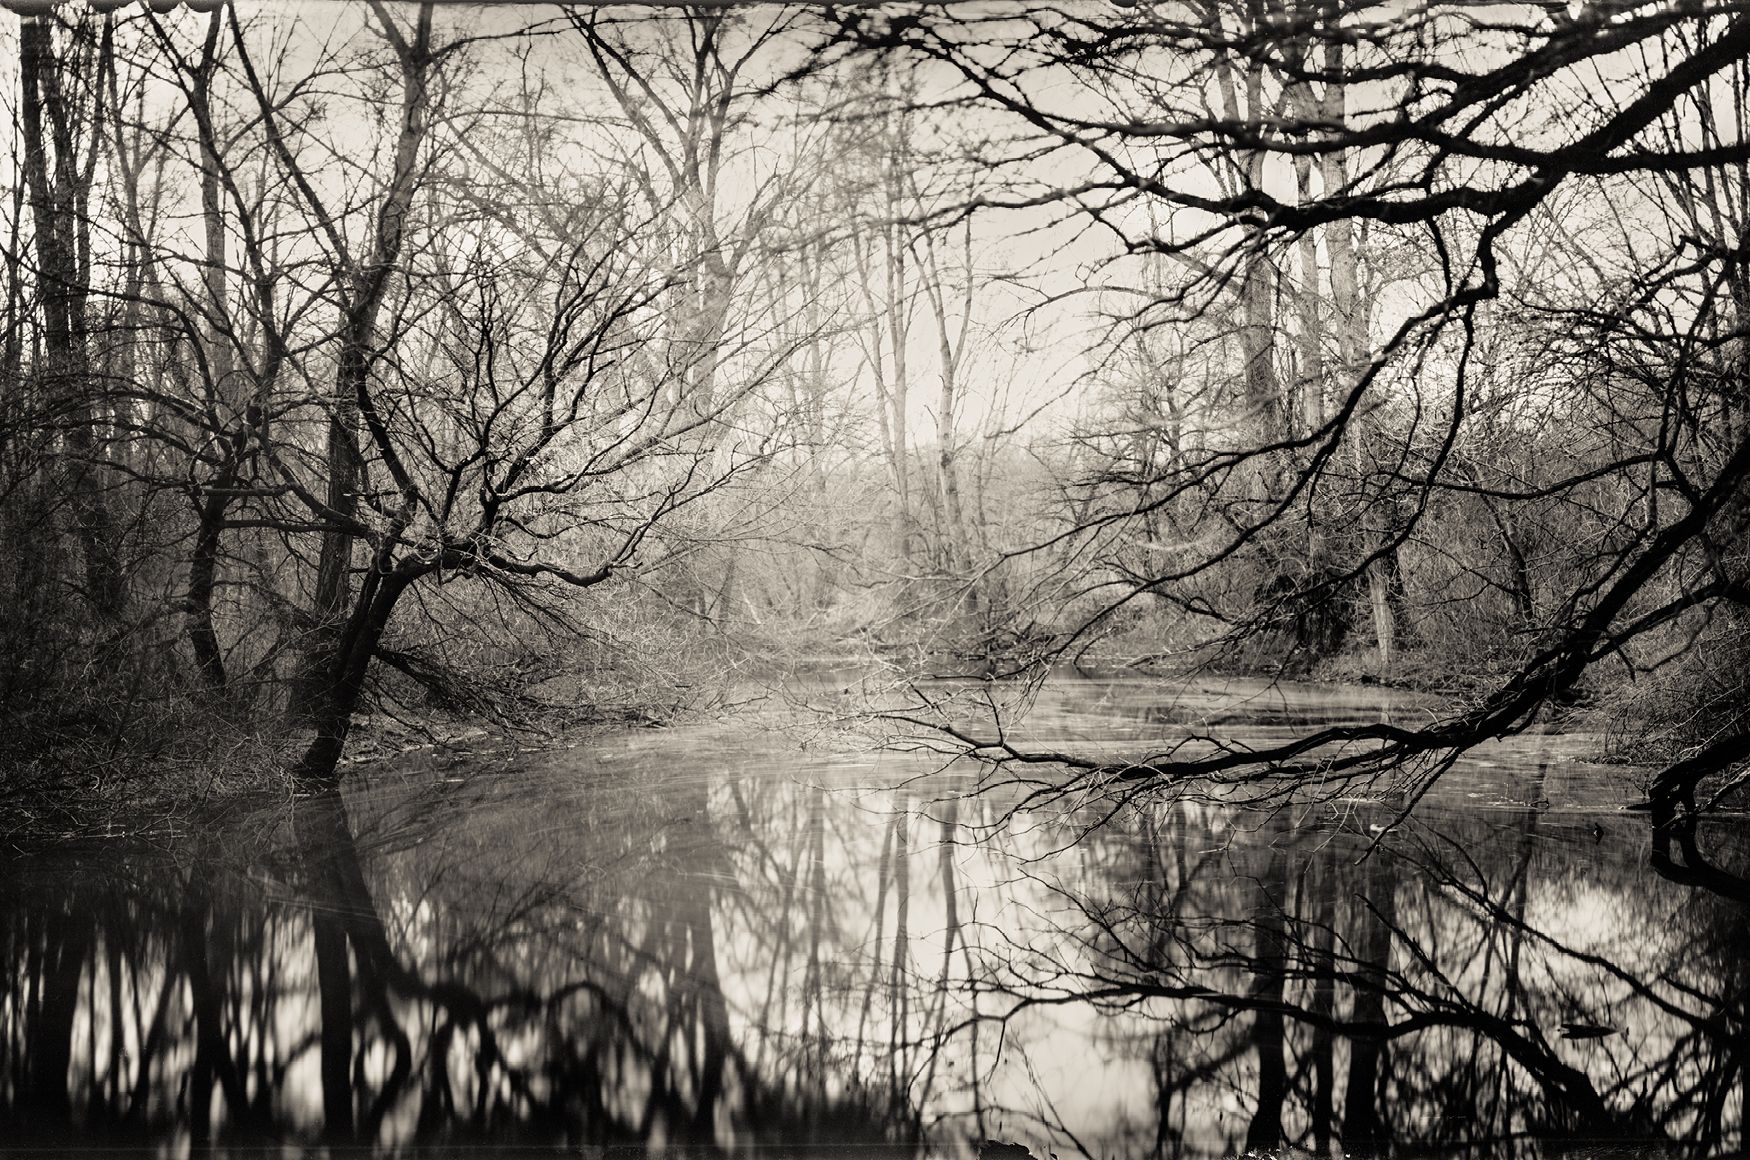 Landschaftsfotografie mit Teich im Herbstwald